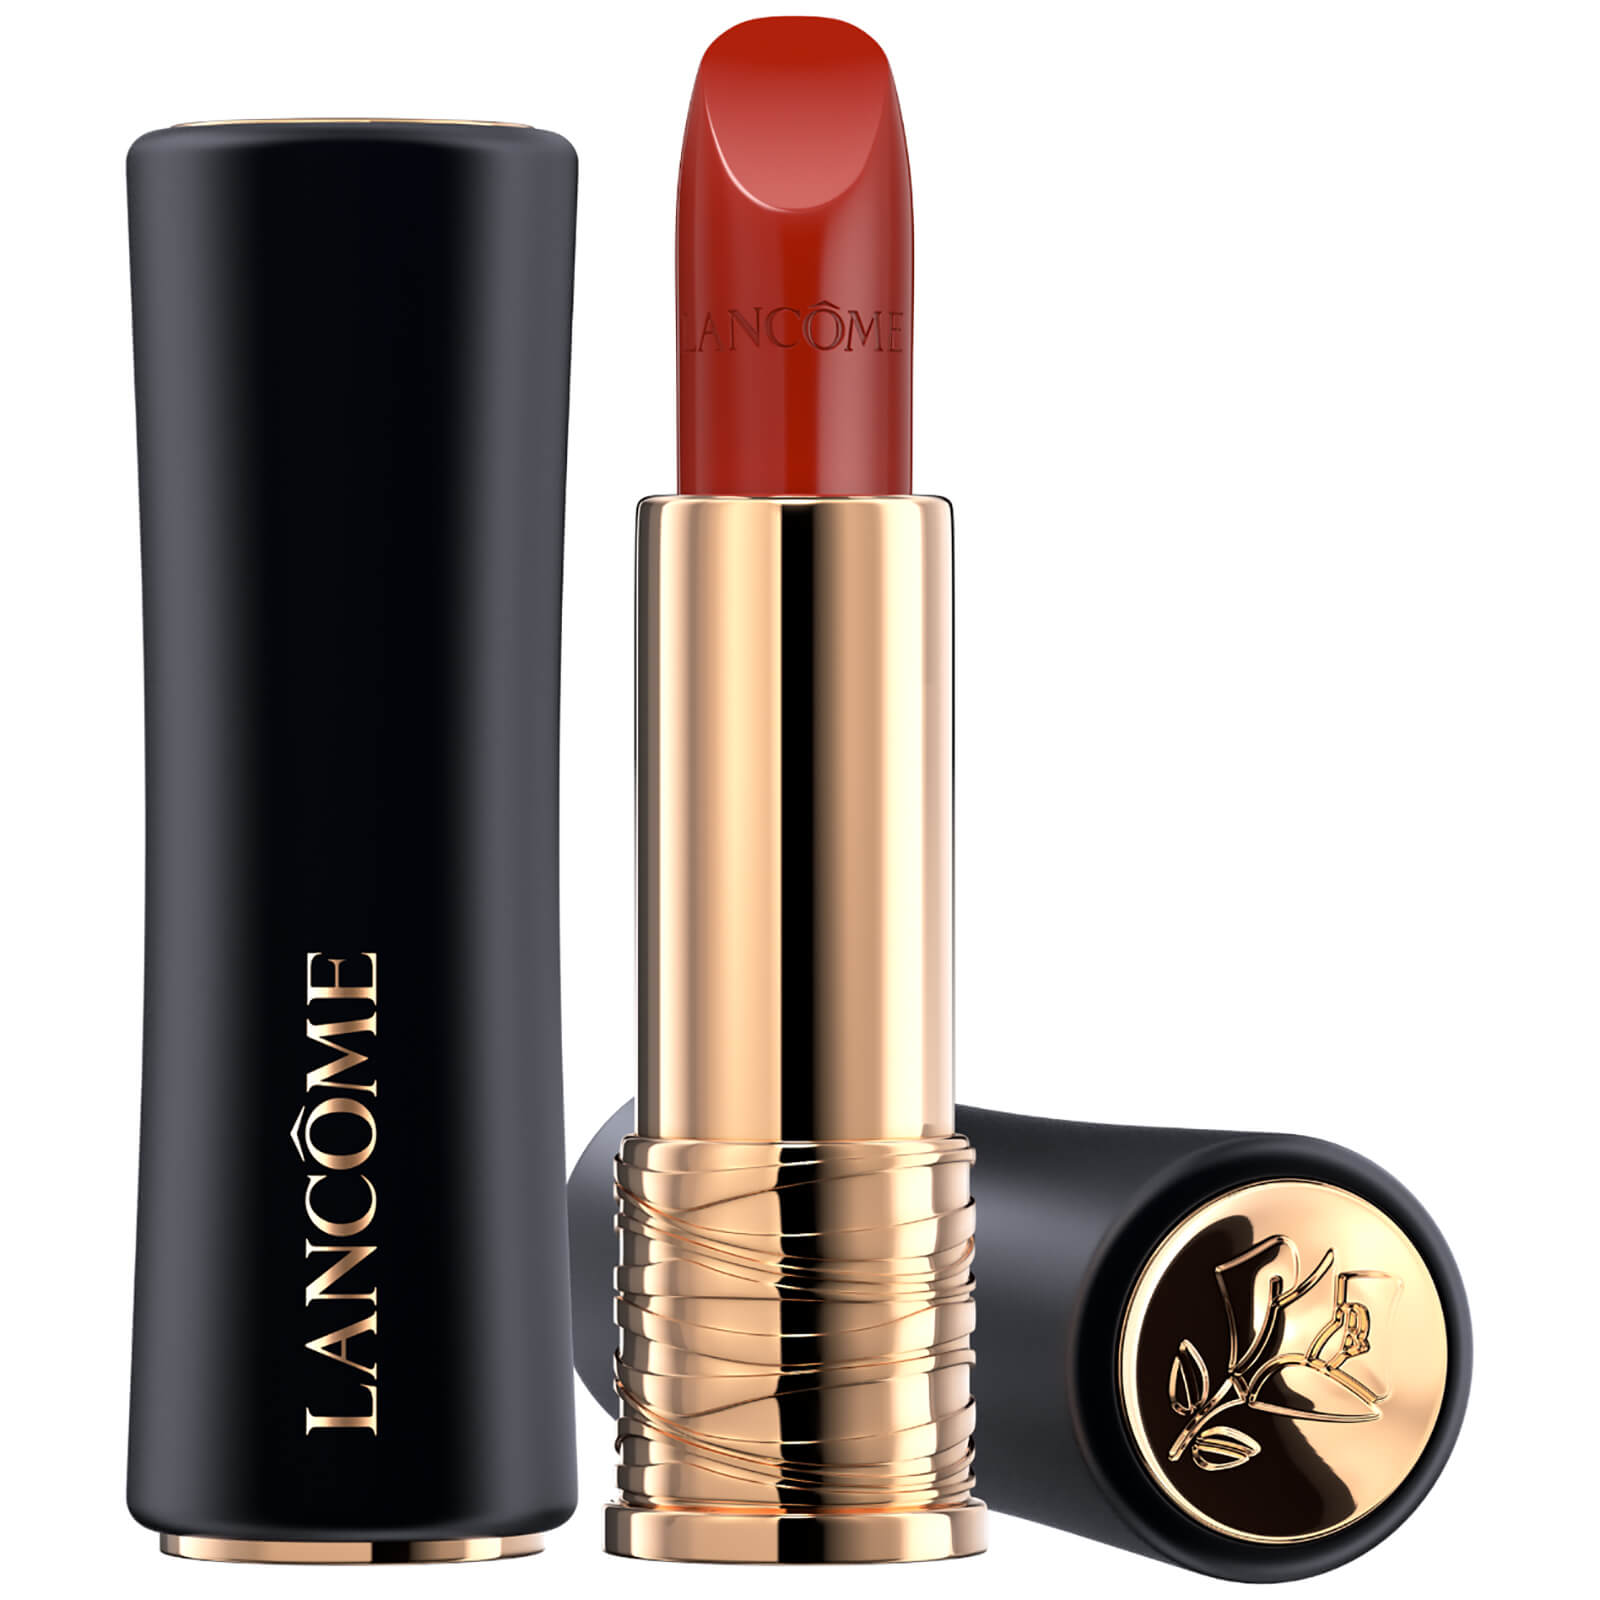 Lancôme L'Absolu Rouge Cream Lipstick 35ml (Verschiedene Farbtöne) - 196 French Touch